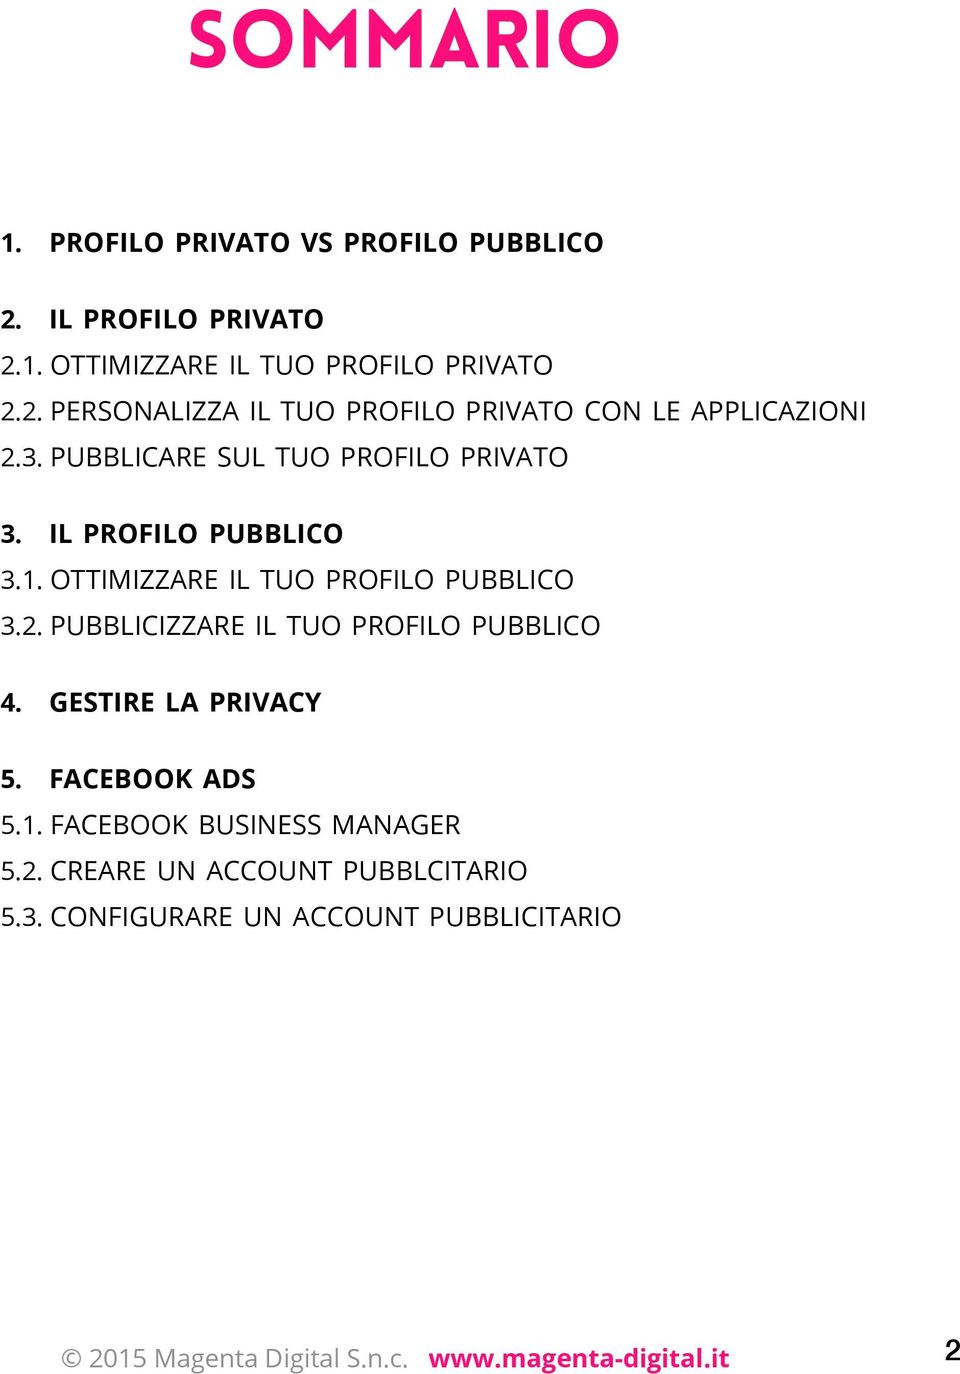 pubblicizzare il tuo profilo pubblico 4. gestire la privacy 5. facebook ads 5.1. facebook business manager 5.2.